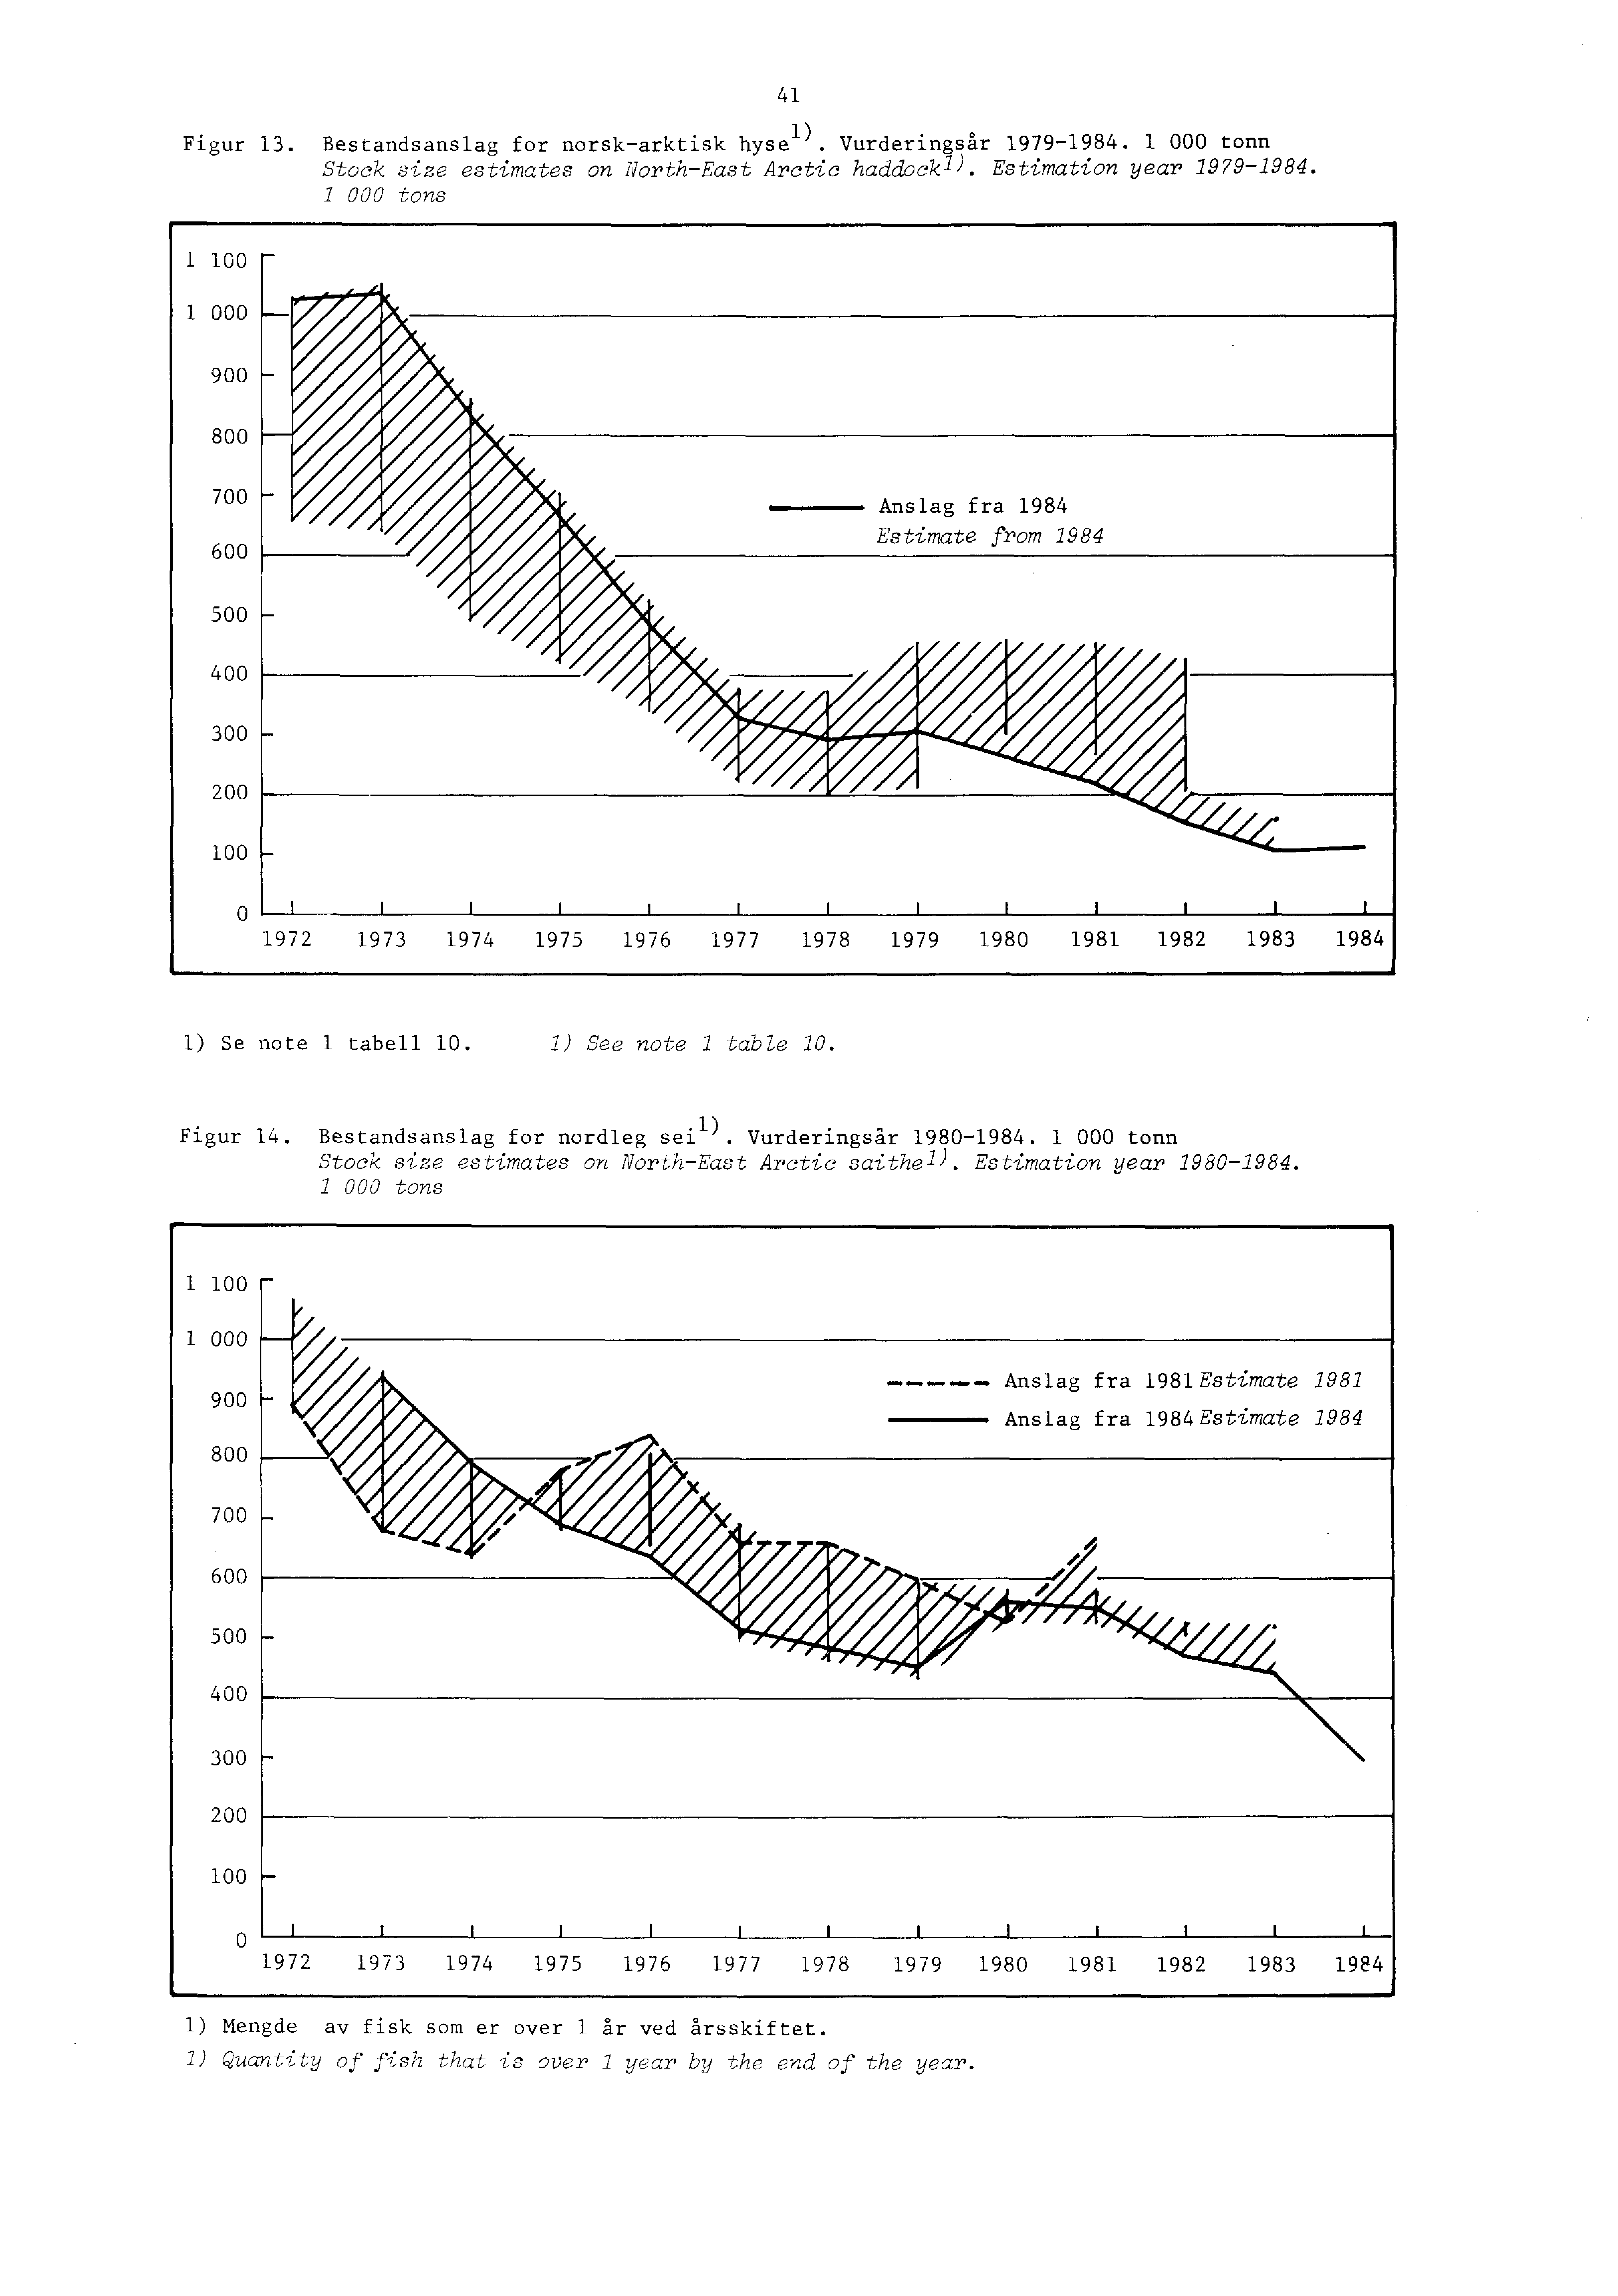 Figur 13. Bestandsanslag for norsk-arktisk hyse l). Vurderingsår 1979-1984. 1 000 tonn Stock size estimates on North-East Arctic haddockl ). Estimation year 1979-1984.